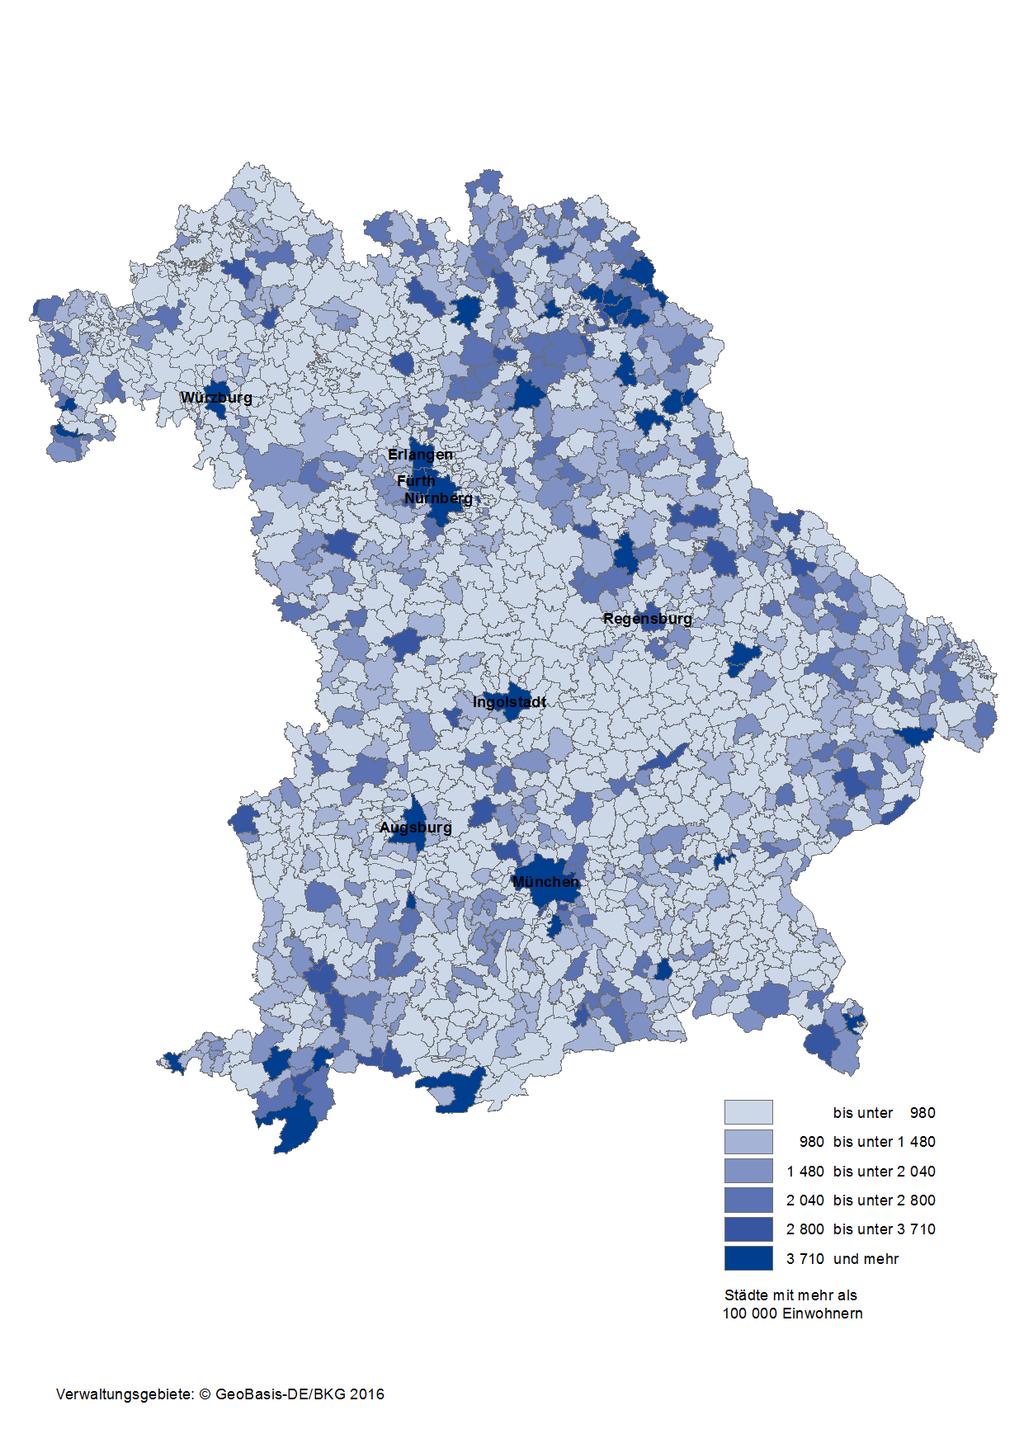 Karte 4: Integrierte kommunale Schulden der kreisangehörigen Gemeinden/Gemeindeverbände und kreisfreien Städte in Bayern am 31.12.